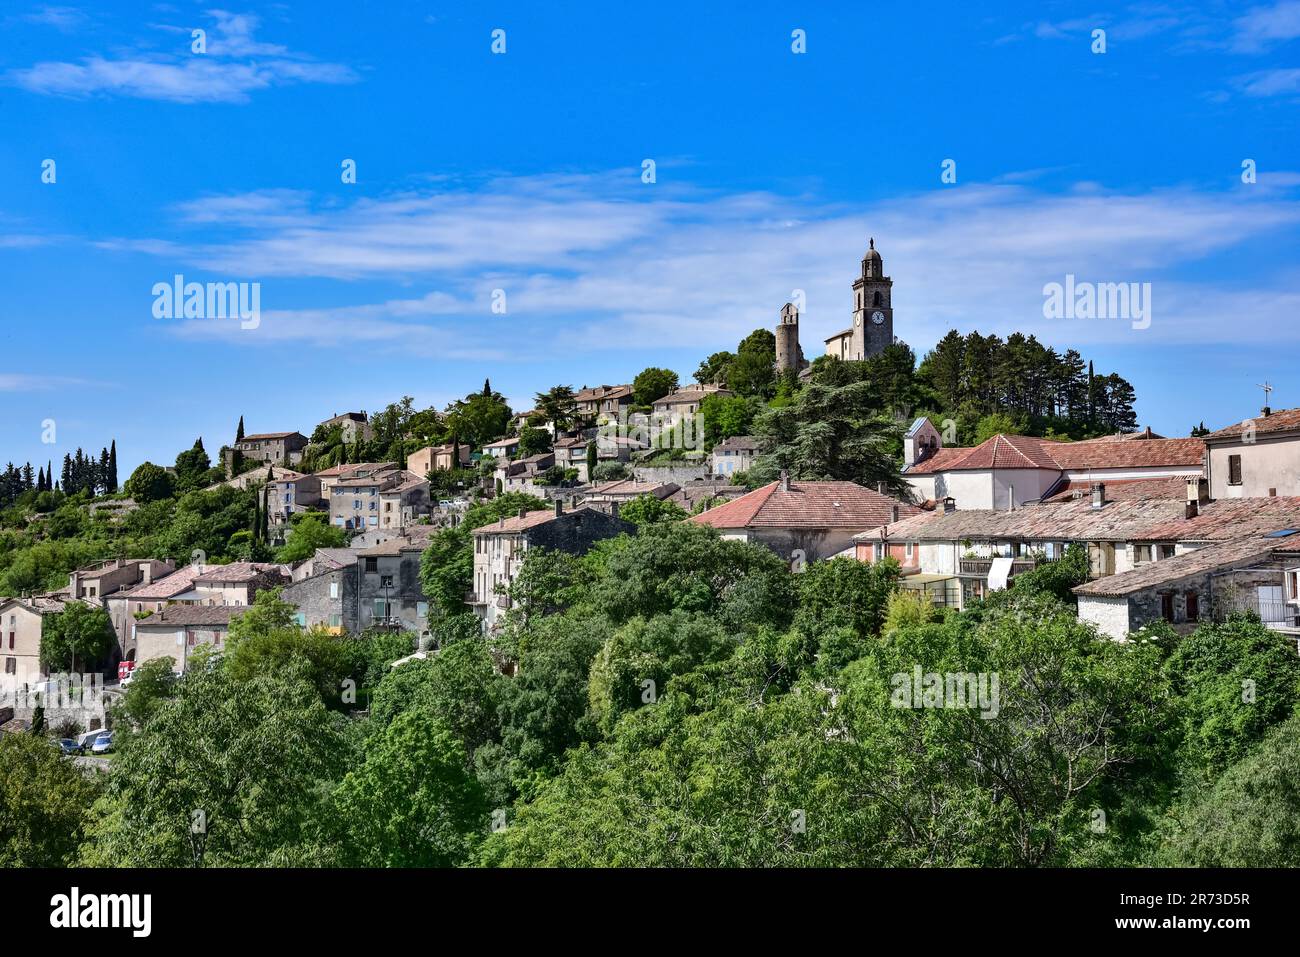 Vue sur la commune de Reillanne dans le Parc naturel du Luberon, en Provence, dans la région Provence-Alpes-Côte d'Azur, dans les Alpes-de-Hauter-Provence d Banque D'Images